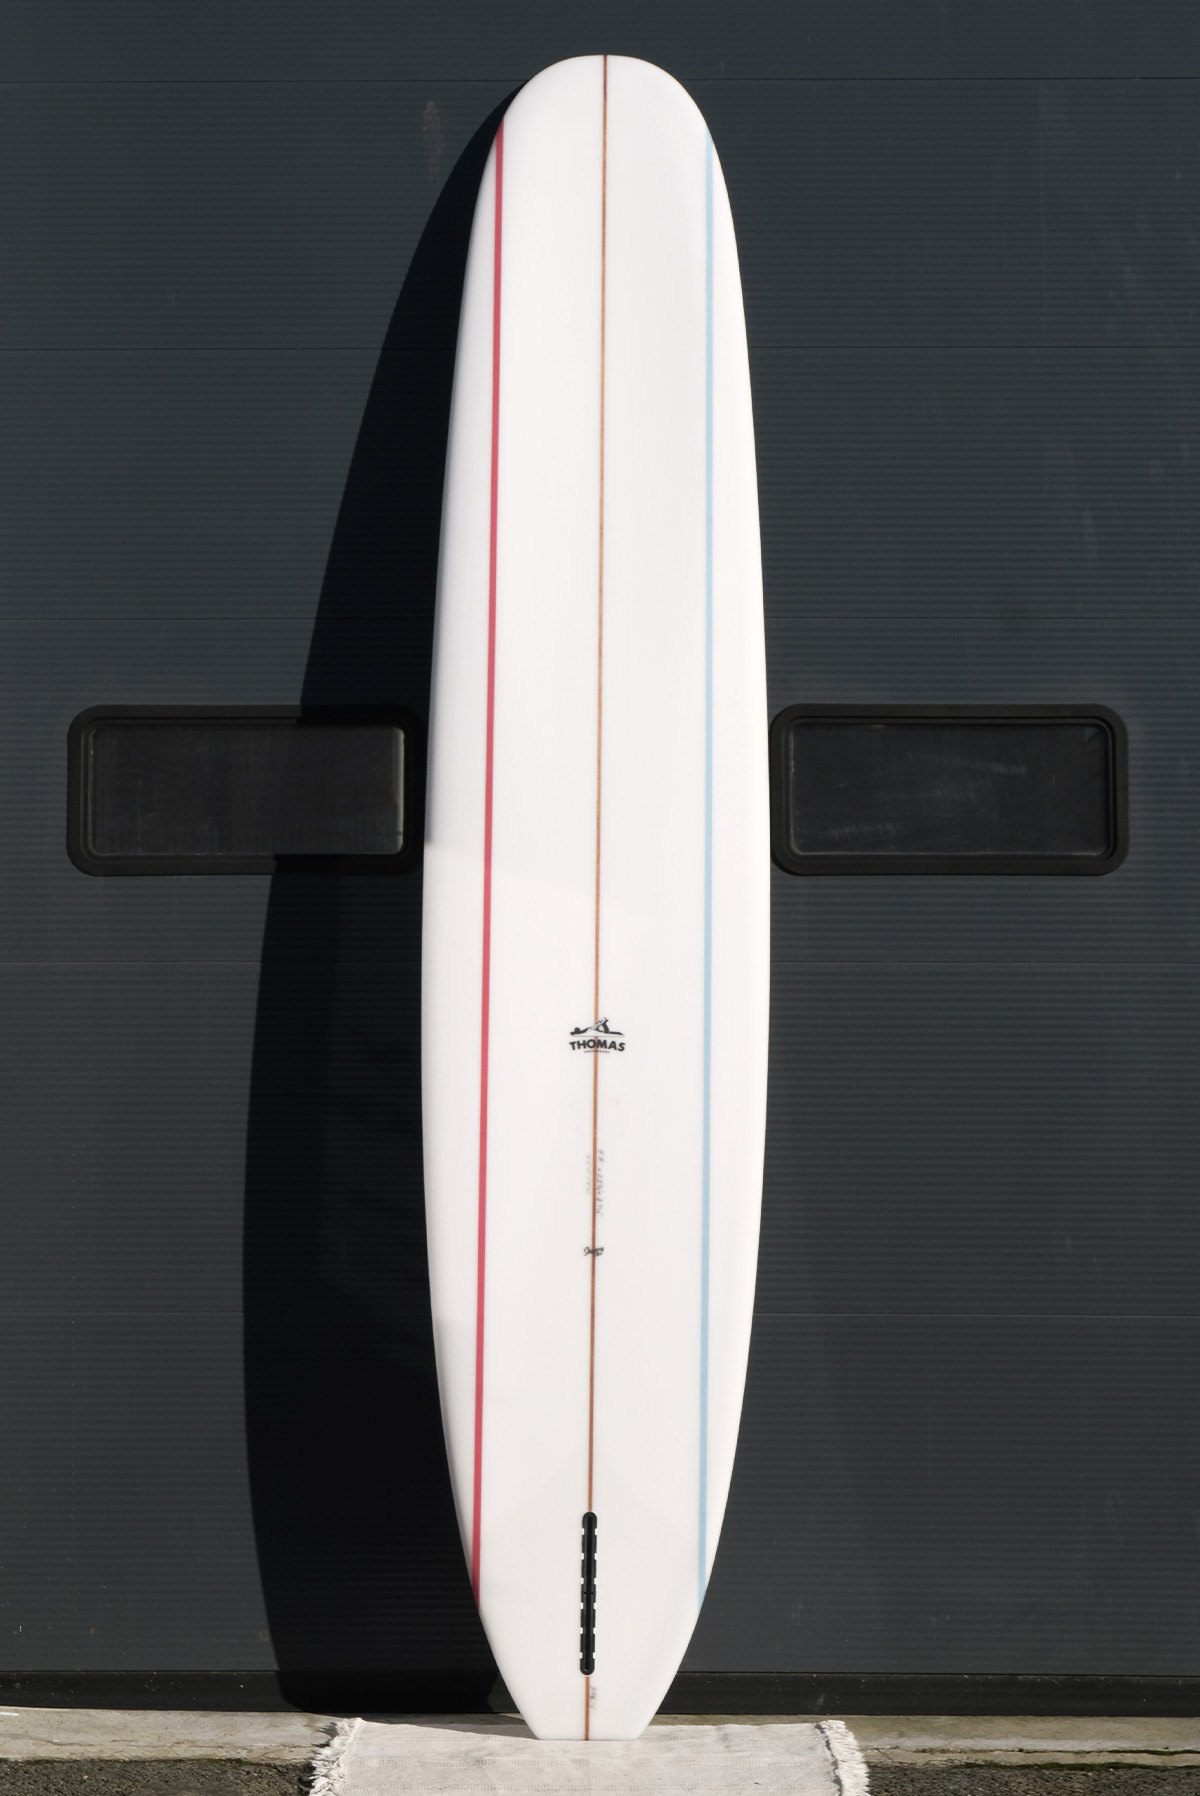 Thomas Bexton 9'6" surfboard